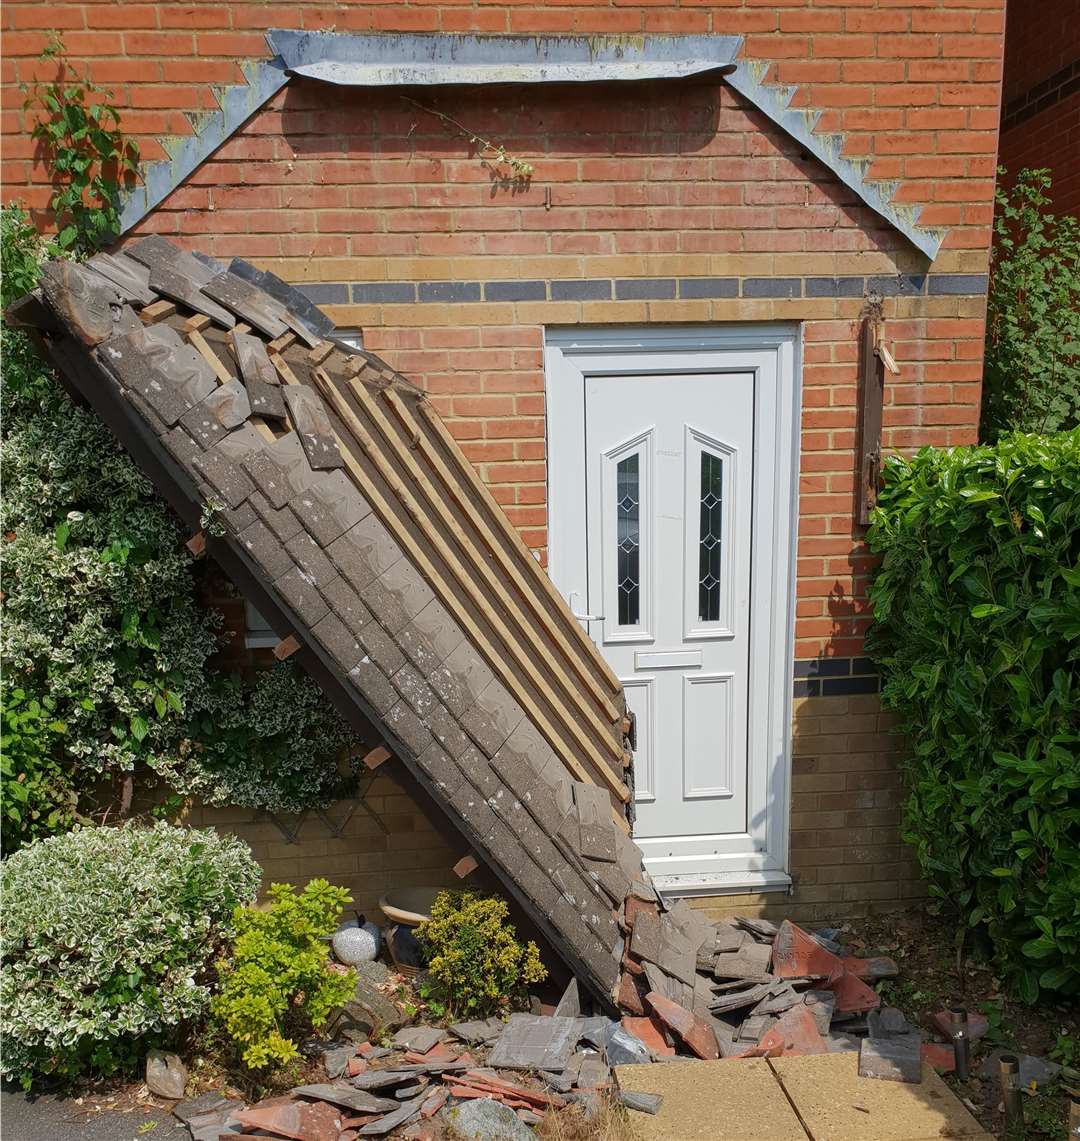 Nikki Emden got a shock when her porch collapsed at her Hawkinge home. All pictures: Nikki Emden